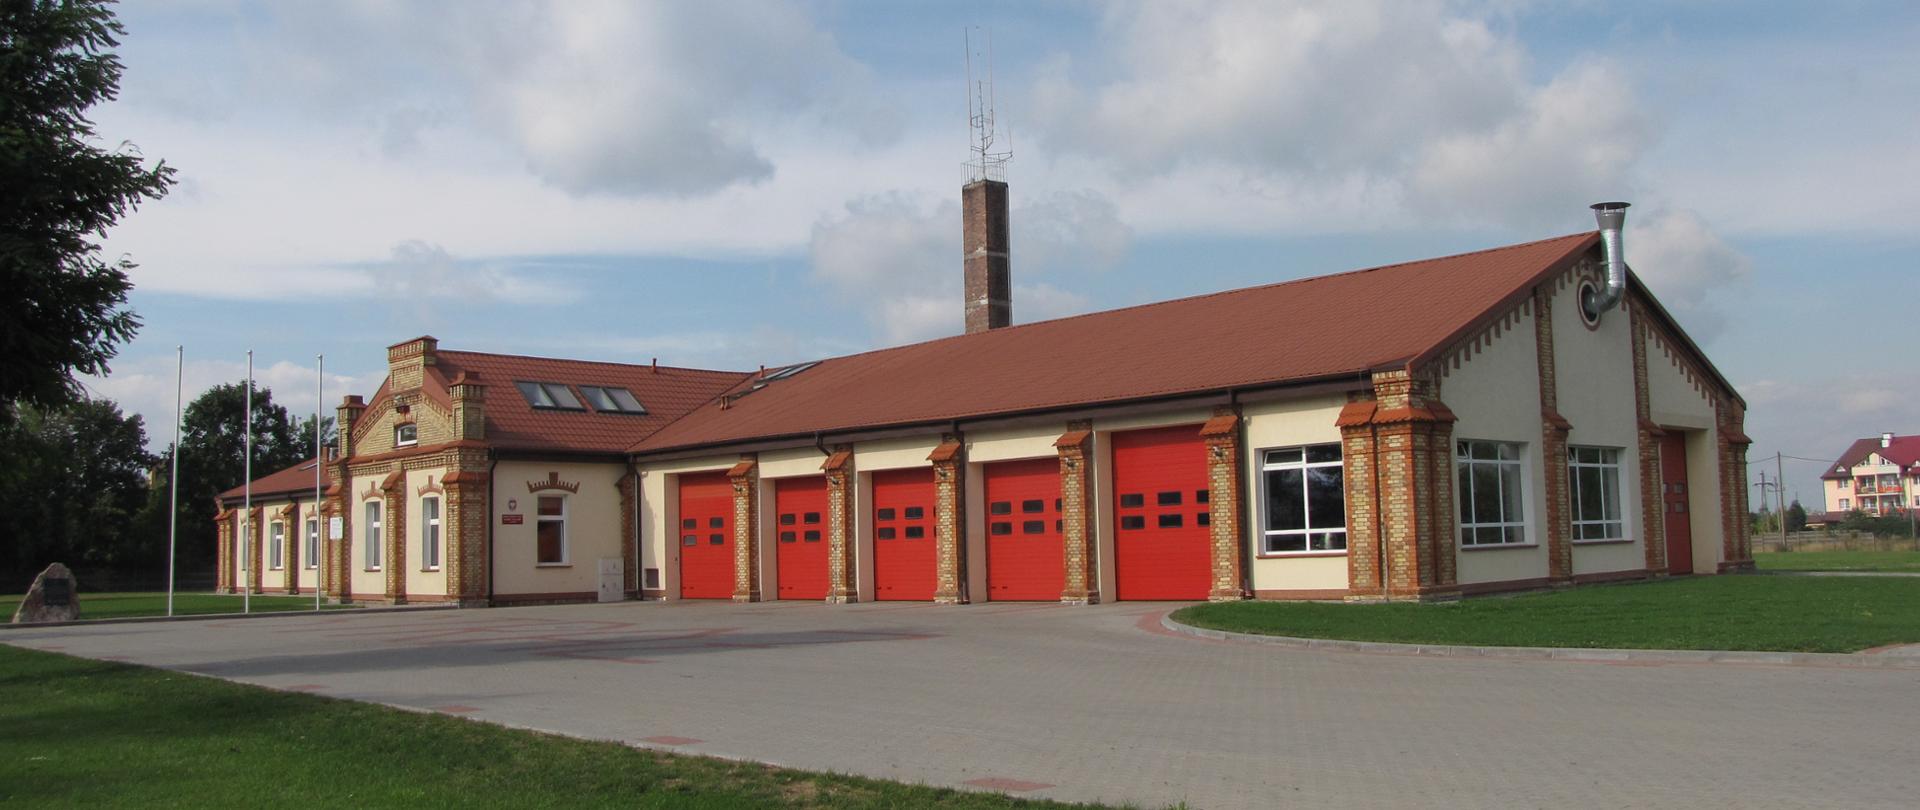 Na zdjęciu budynek Komendy Powiatowej Państwowej Straży Pożarnej w Grajewie. Widoczne czerwone bramy garażowe, budynek w kolorze jasnym piaskowym, dach brązowy, narożniki budynku z czerwonej i żółtej cegły. Z lewej strony zdjęcia widoczny kawałek drzewa liściastego.